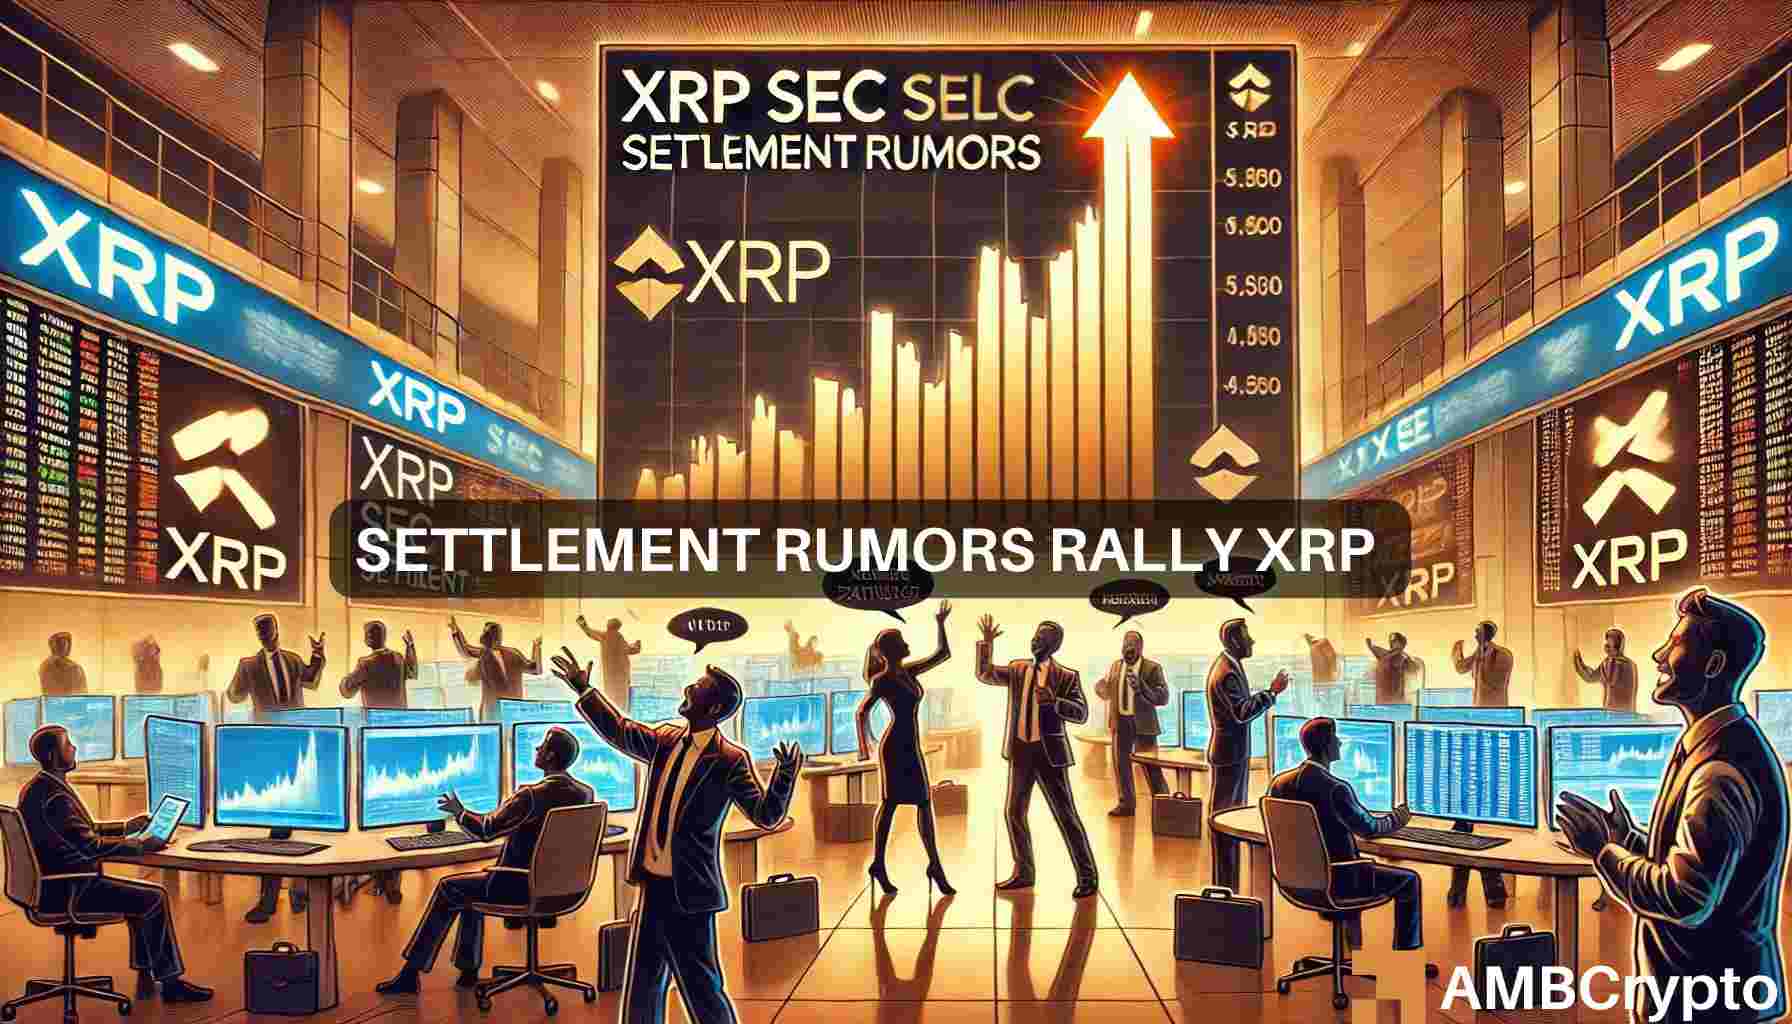 SEC vs Ripple settlement rumor sparks XRP rally – What’s next?